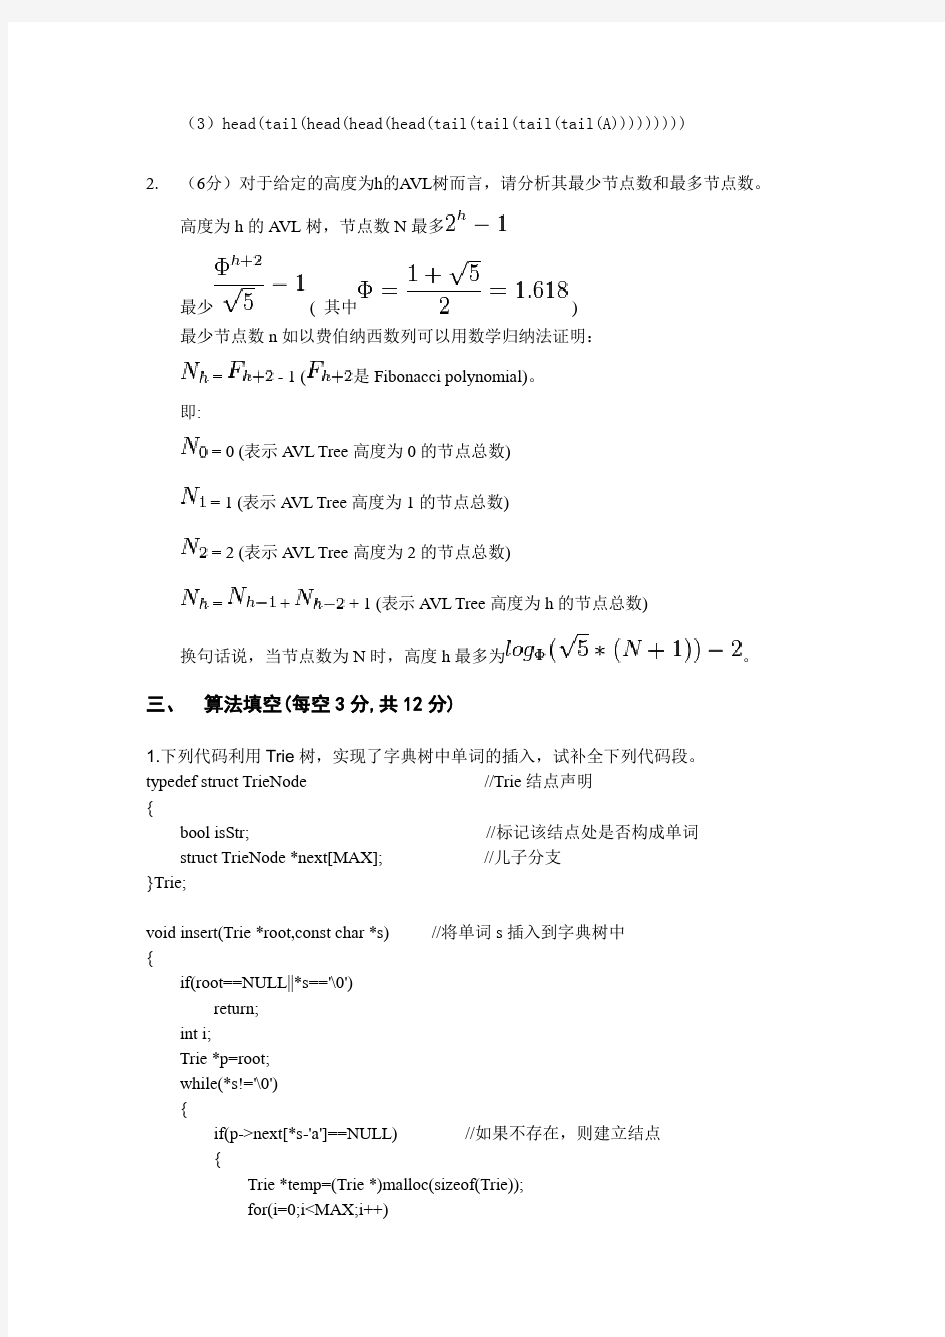 北京大学数据结构与算法2015-16DS期末考试题考试